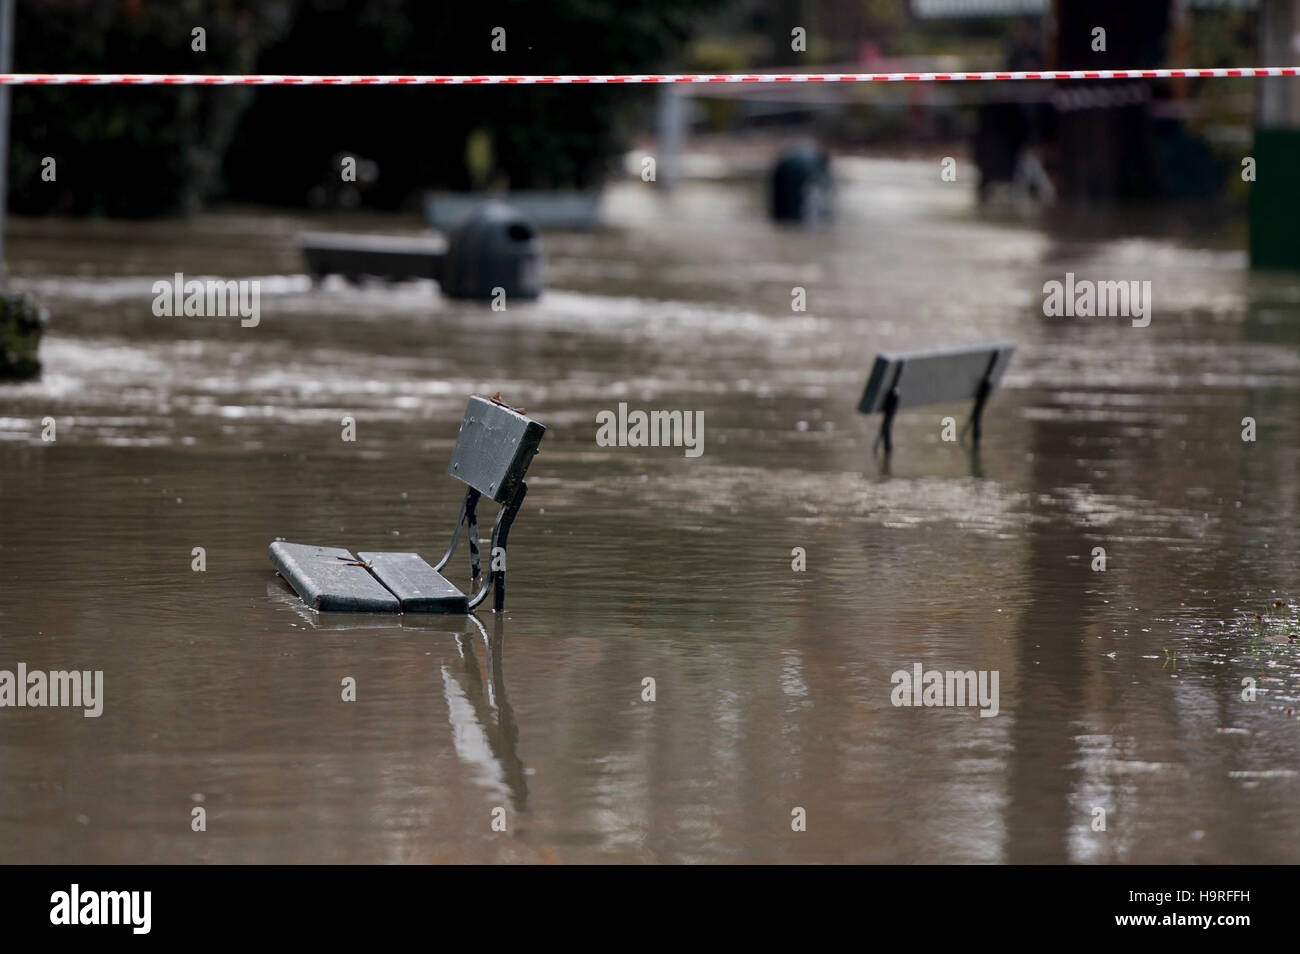 Torino, Italia. 25 novembre 2016: una riga di un banco di banco sono sommerse in watera opo alluvione del fiume Po a causa del maltempo a Torino. Credito: Nicolò Campo/Alamy Live News Foto Stock